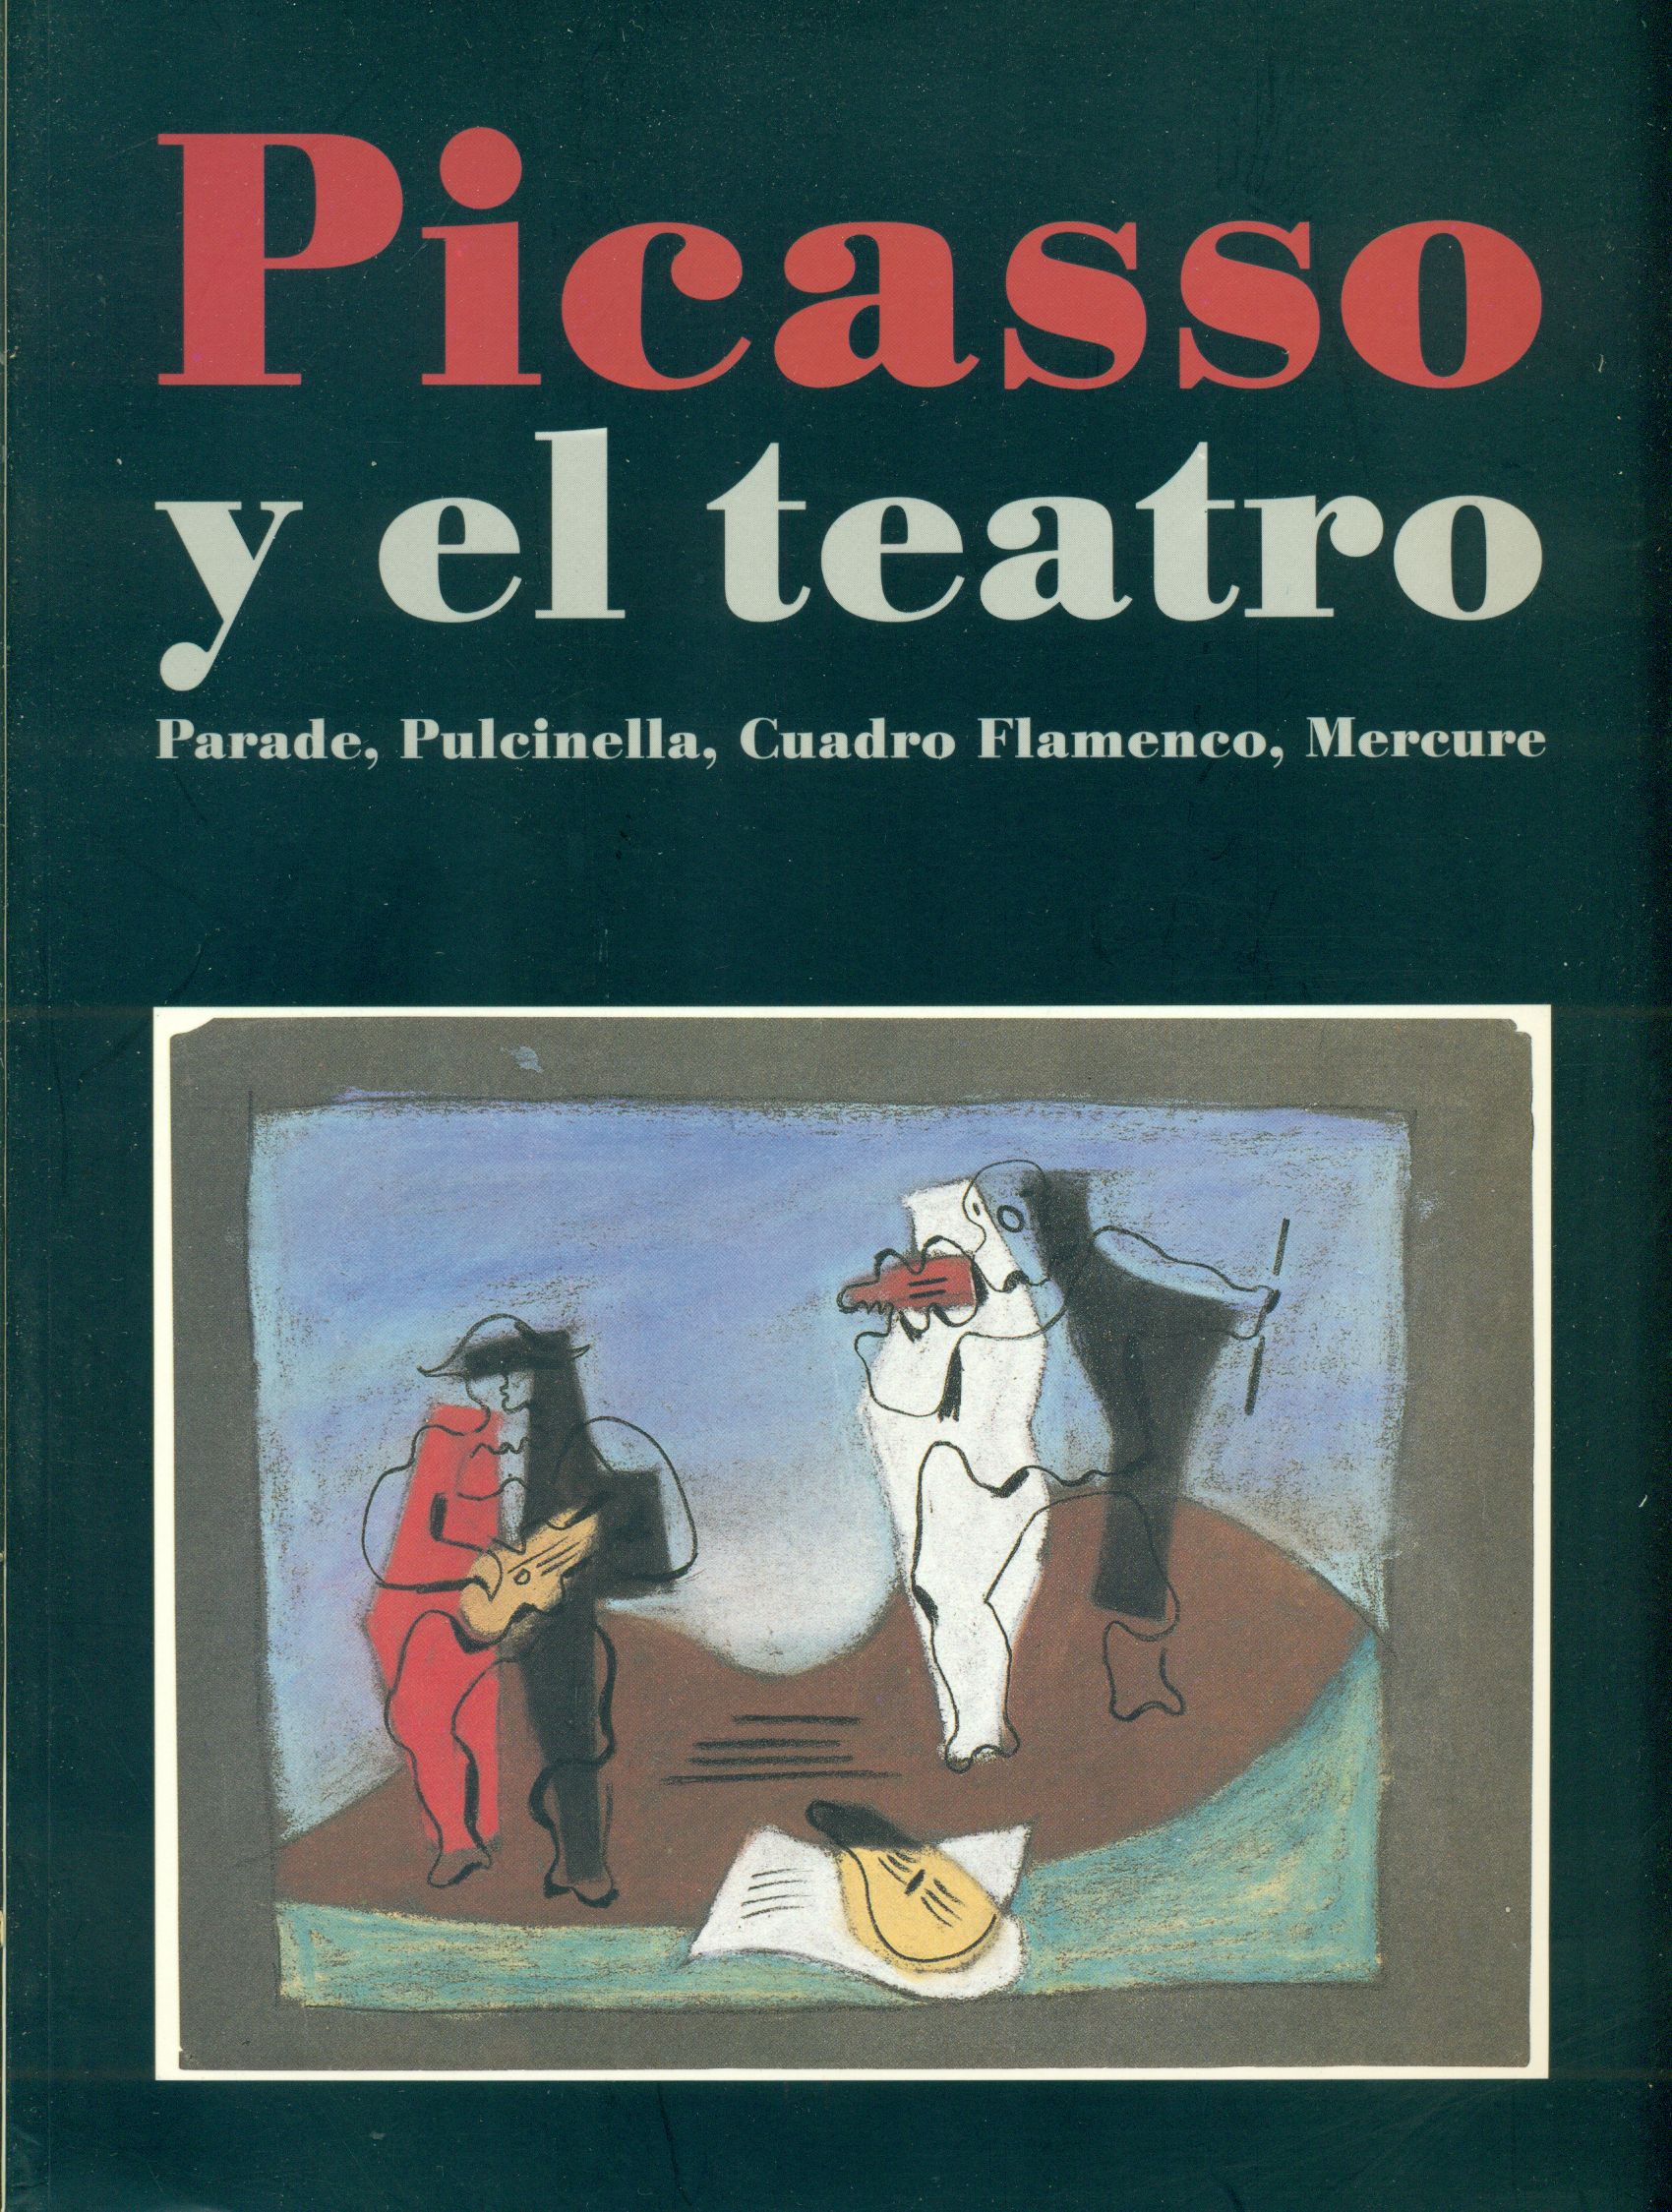 Picasso y el teatro. Parade Pulcinella Cuadro Flamenco Mercure - PICASSO, Pablo (Malaga, 1881- Mougins, 1973),